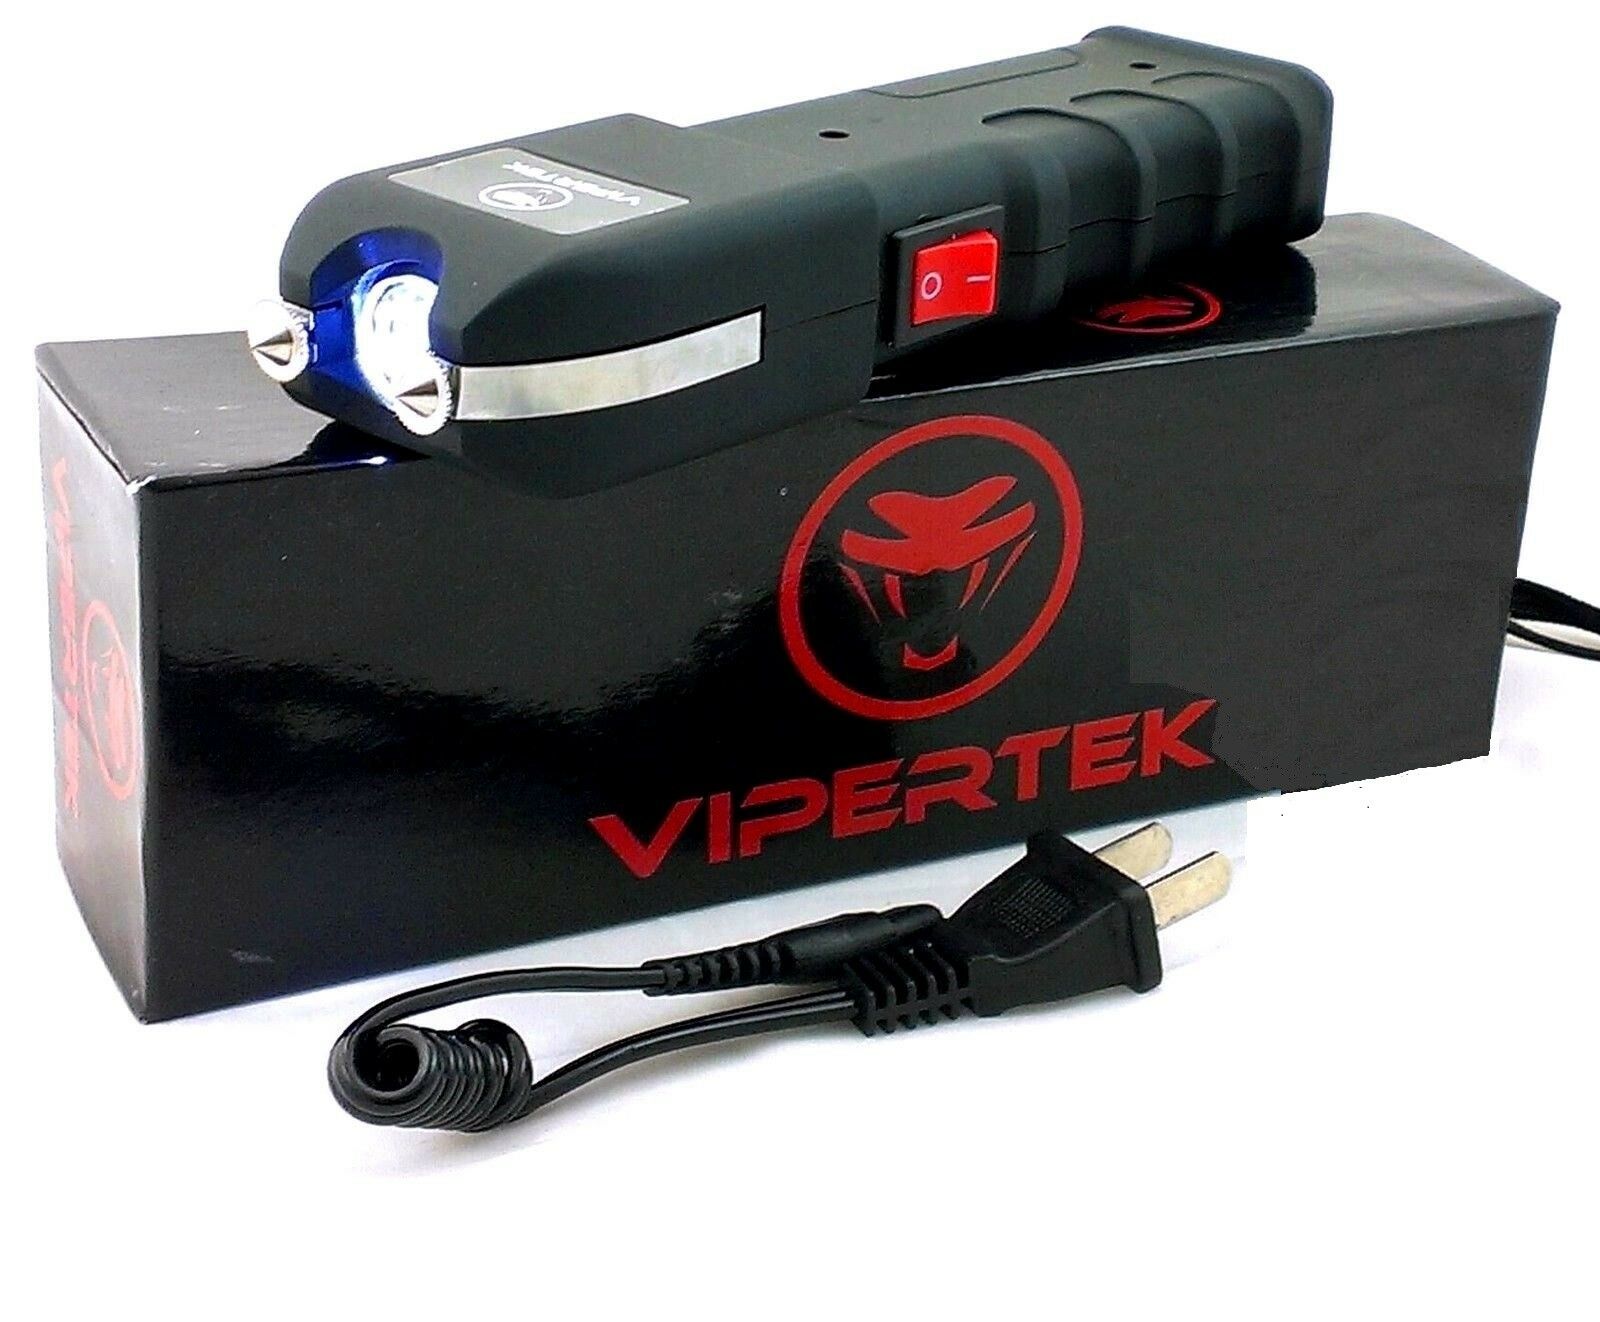 Vipertek Vts-989 - 600 Billion Volt Rechargeable Led Stun Gun W/ Holster Case